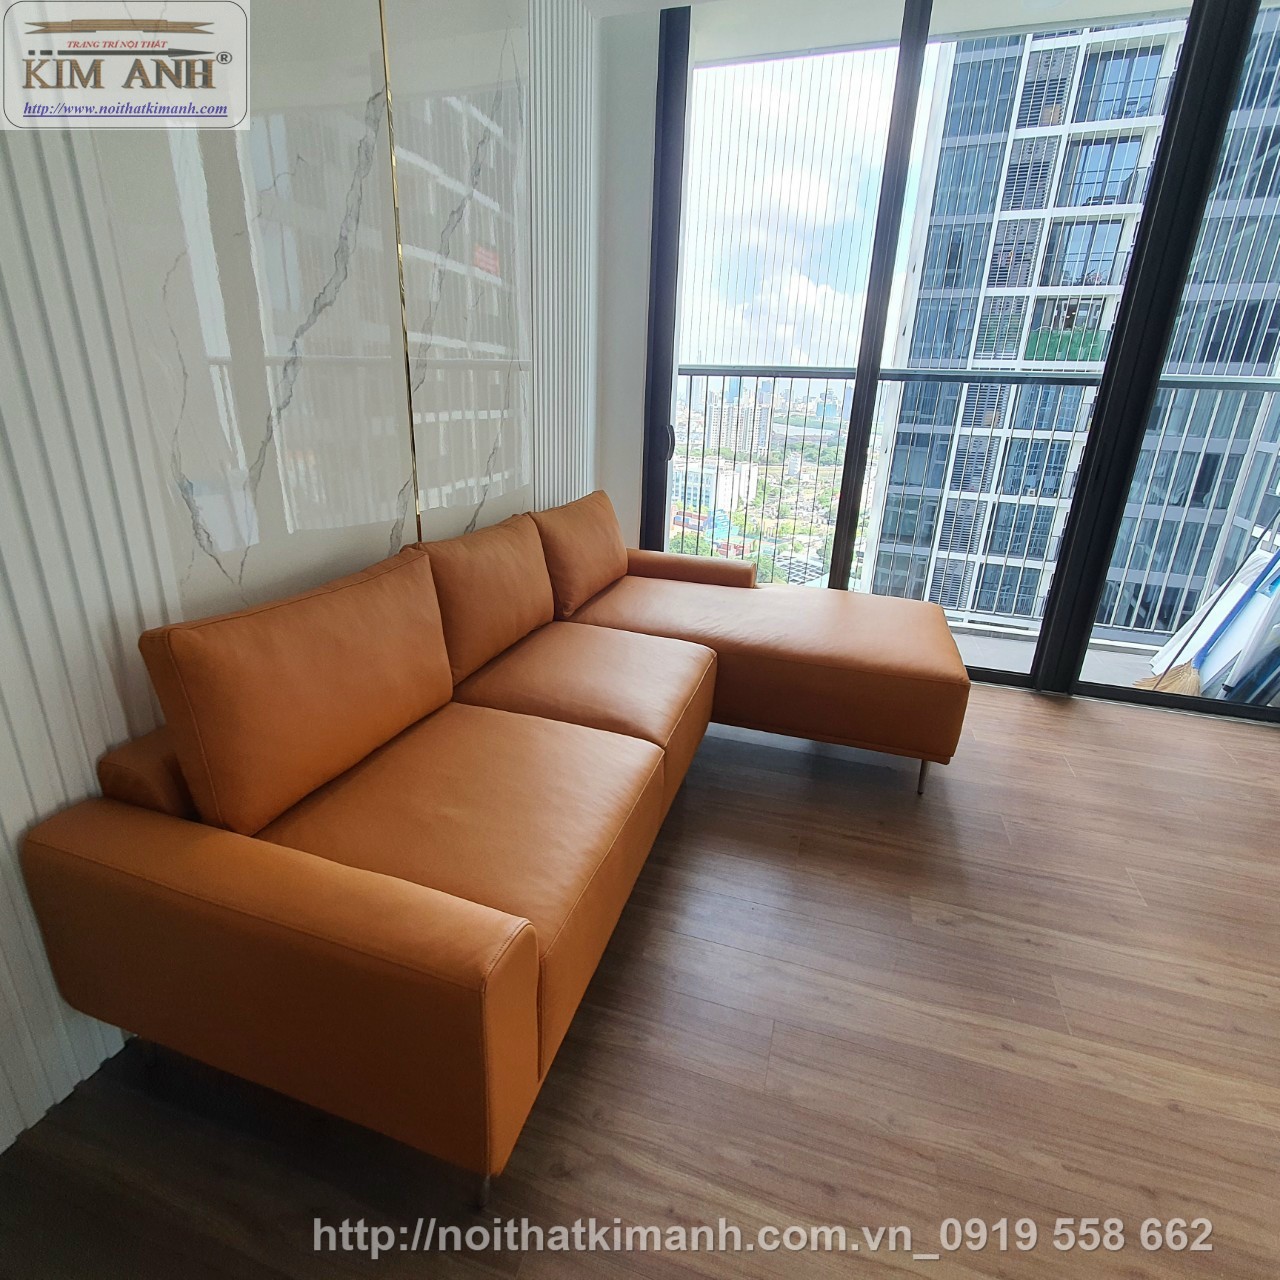 Bộ ghế sofa chung cư giá rẻ của chúng tôi sẽ giúp bạn trang trí không gian sống với mức chi tiêu tiết kiệm. Với thiết kế đa dạng và chất lượng cao, chúng tôi đem đến những bộ ghế sofa chất lượng với giá cả phải chăng. Hãy cùng khám phá ảnh liên quan để tìm cho mình một bộ sofa chung cư giá rẻ nhất phù hợp với phong cách của bạn.